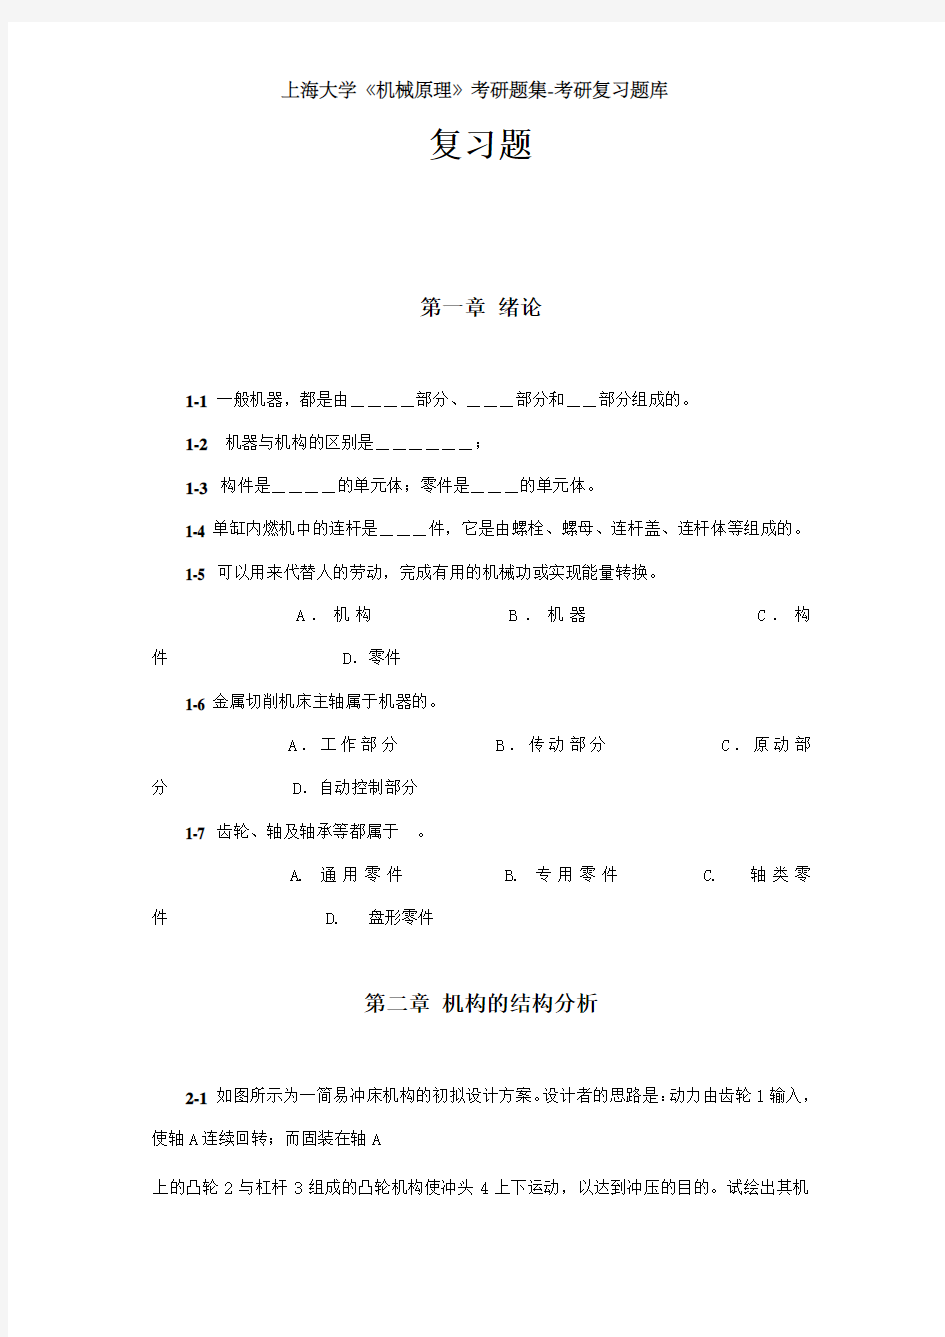 上海理工大学《机械原理》第二版考研题集-考研复习题库